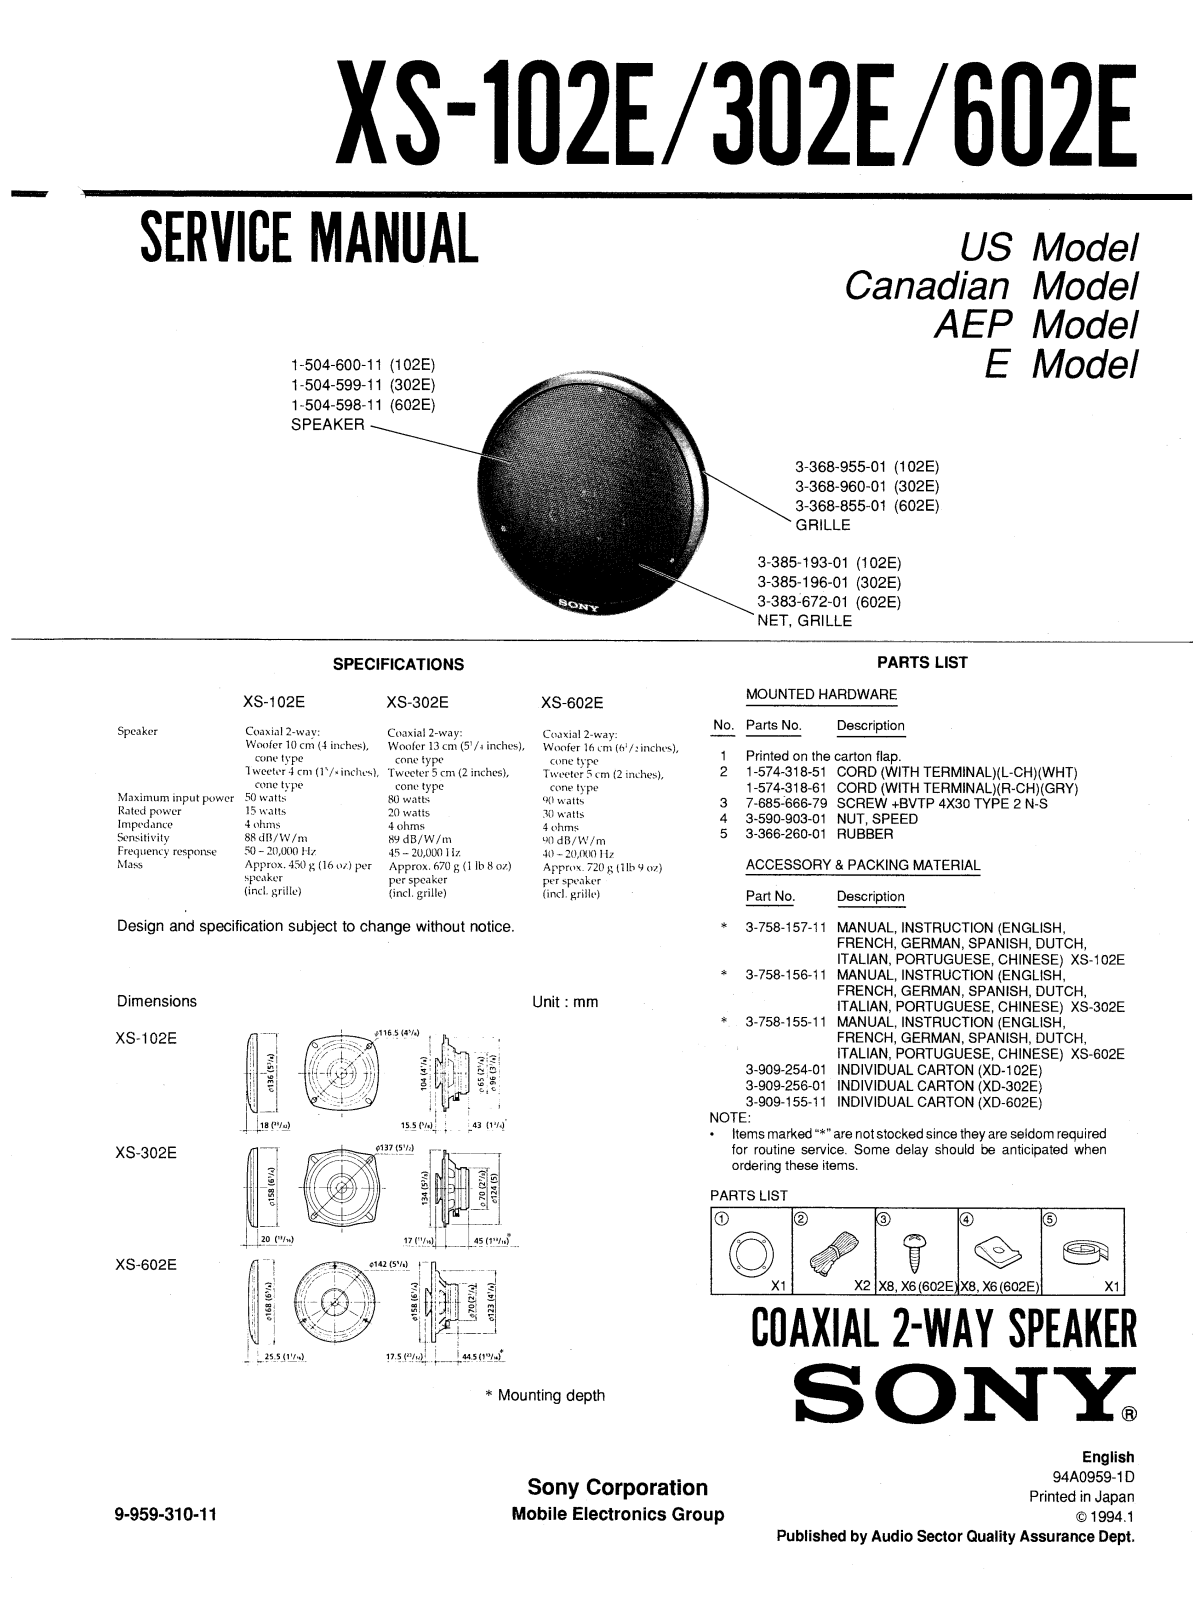 Sony XS-102E, XS-302E, XS-602E SERVICE MANUAL